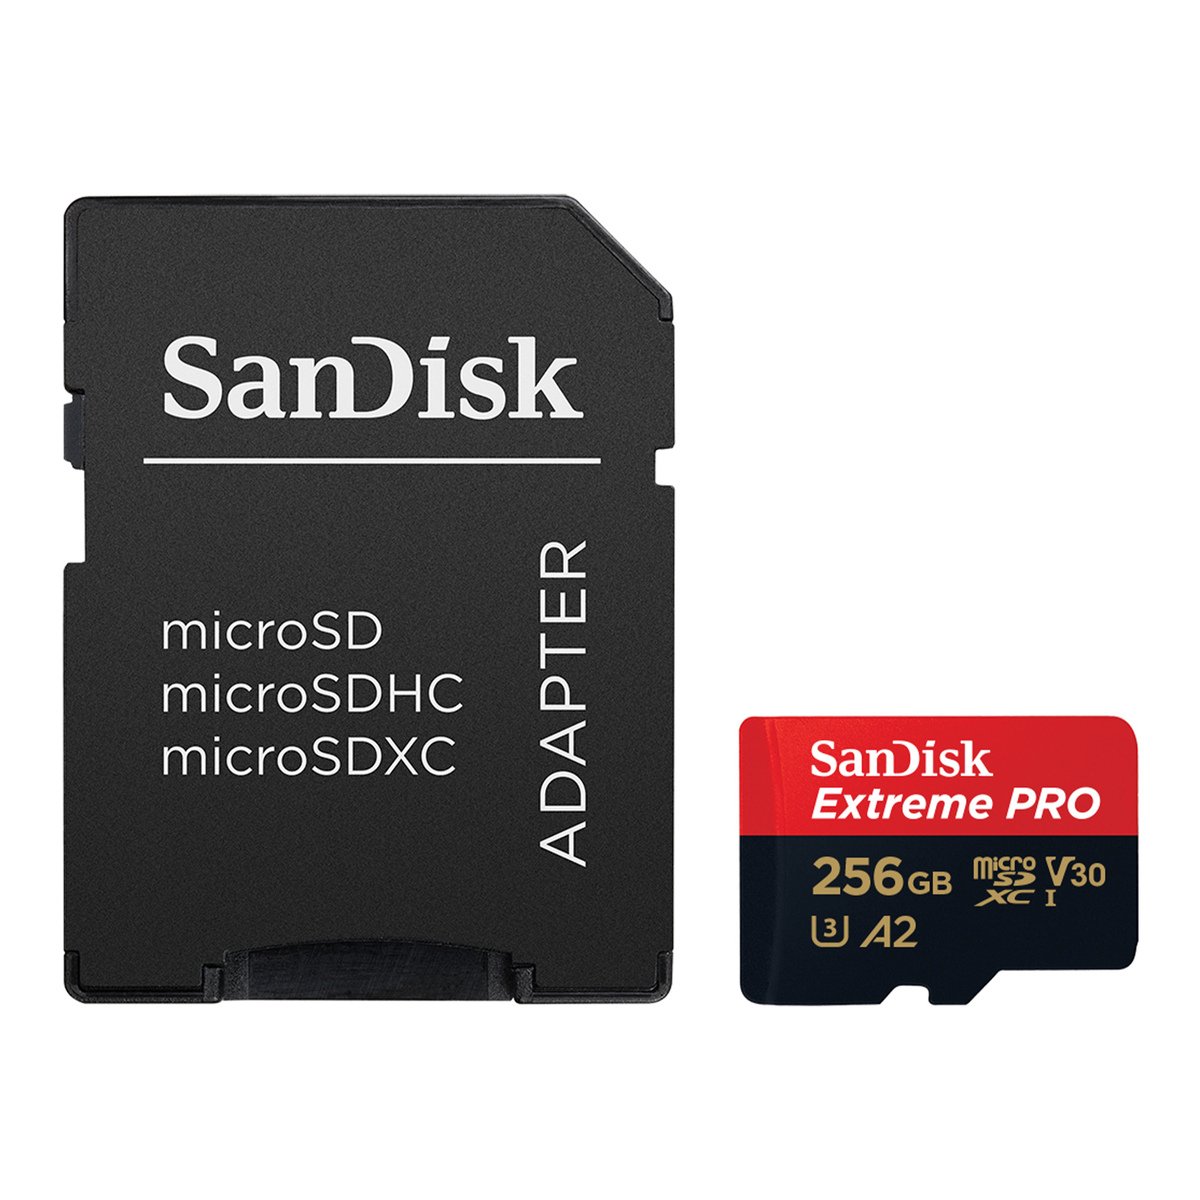 بطاقة ذاكرة SanDisk Extreme Pro MicroSDXC بسعة 256 جيجا بايت ، مع محول  Rescue Pro Deluxe + SD  ، أداء تطبيق A2 ، سرعة قراءة تصل إلى 170 ميجابايت / ثانية ، الفئة C10 / V30 / U3